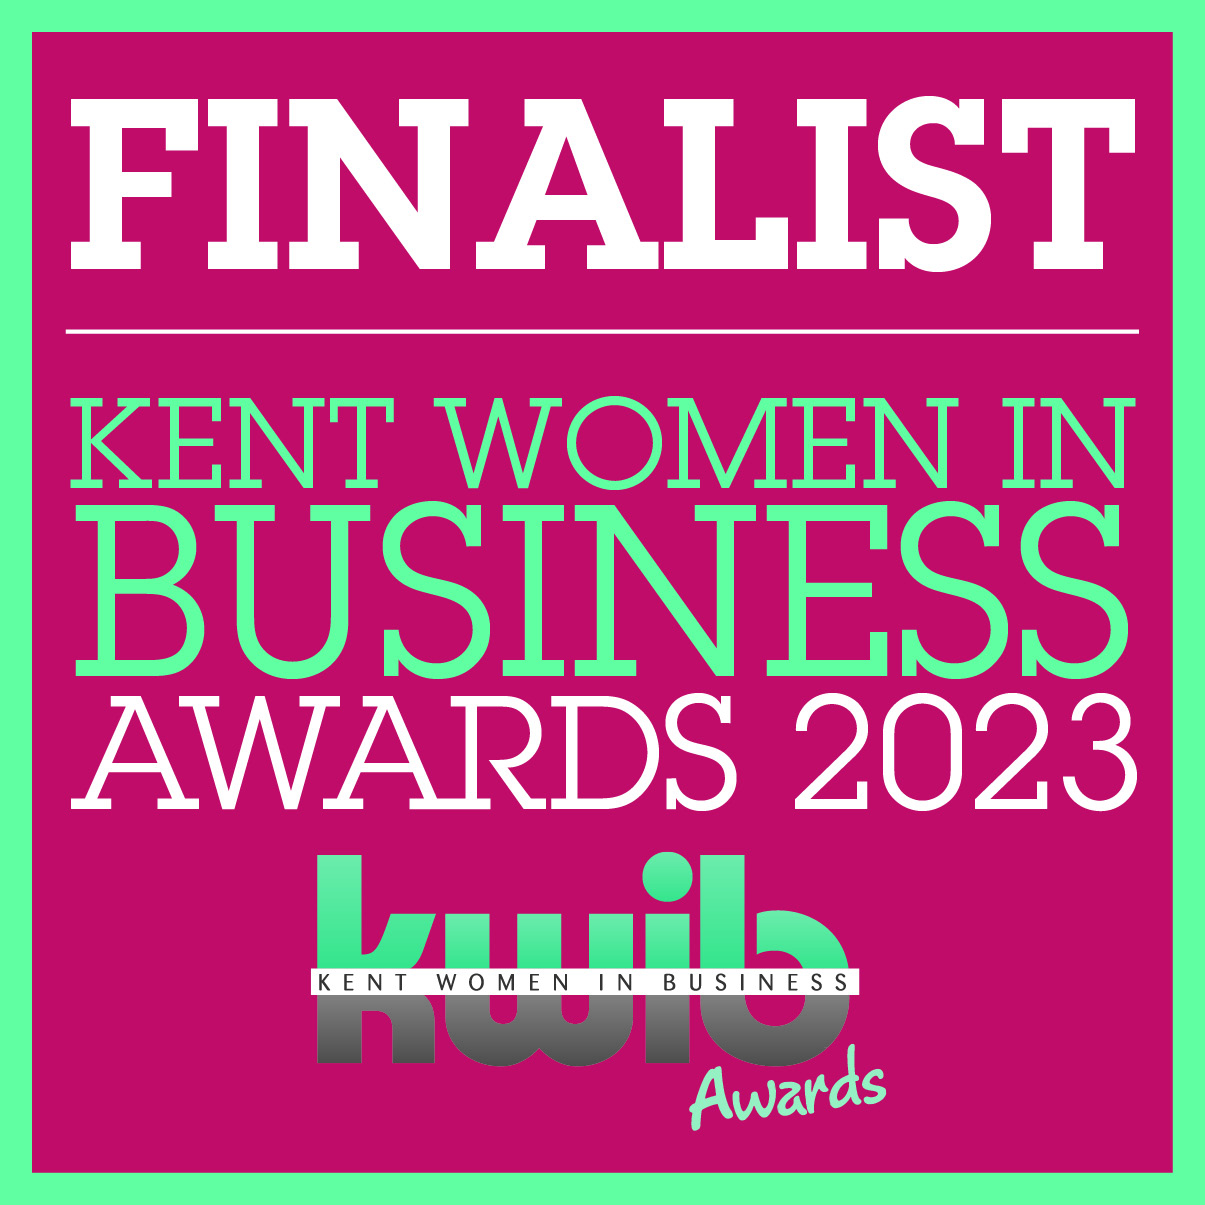 Kent women in business award finalist logo